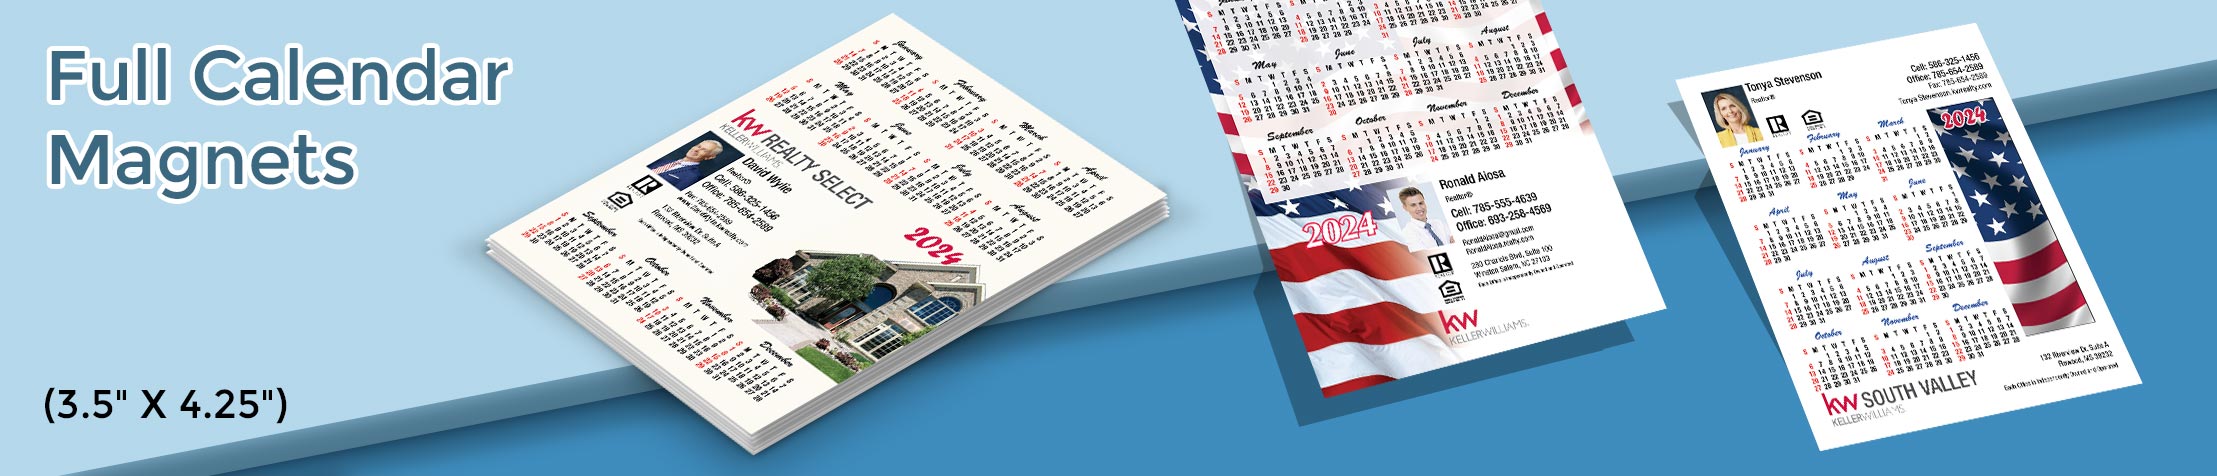 Keller Williams Real Estate Full Calendar Magnets - KW approved vendor 2019 calendars, 3.5” by 4.25” | BestPrintBuy.com